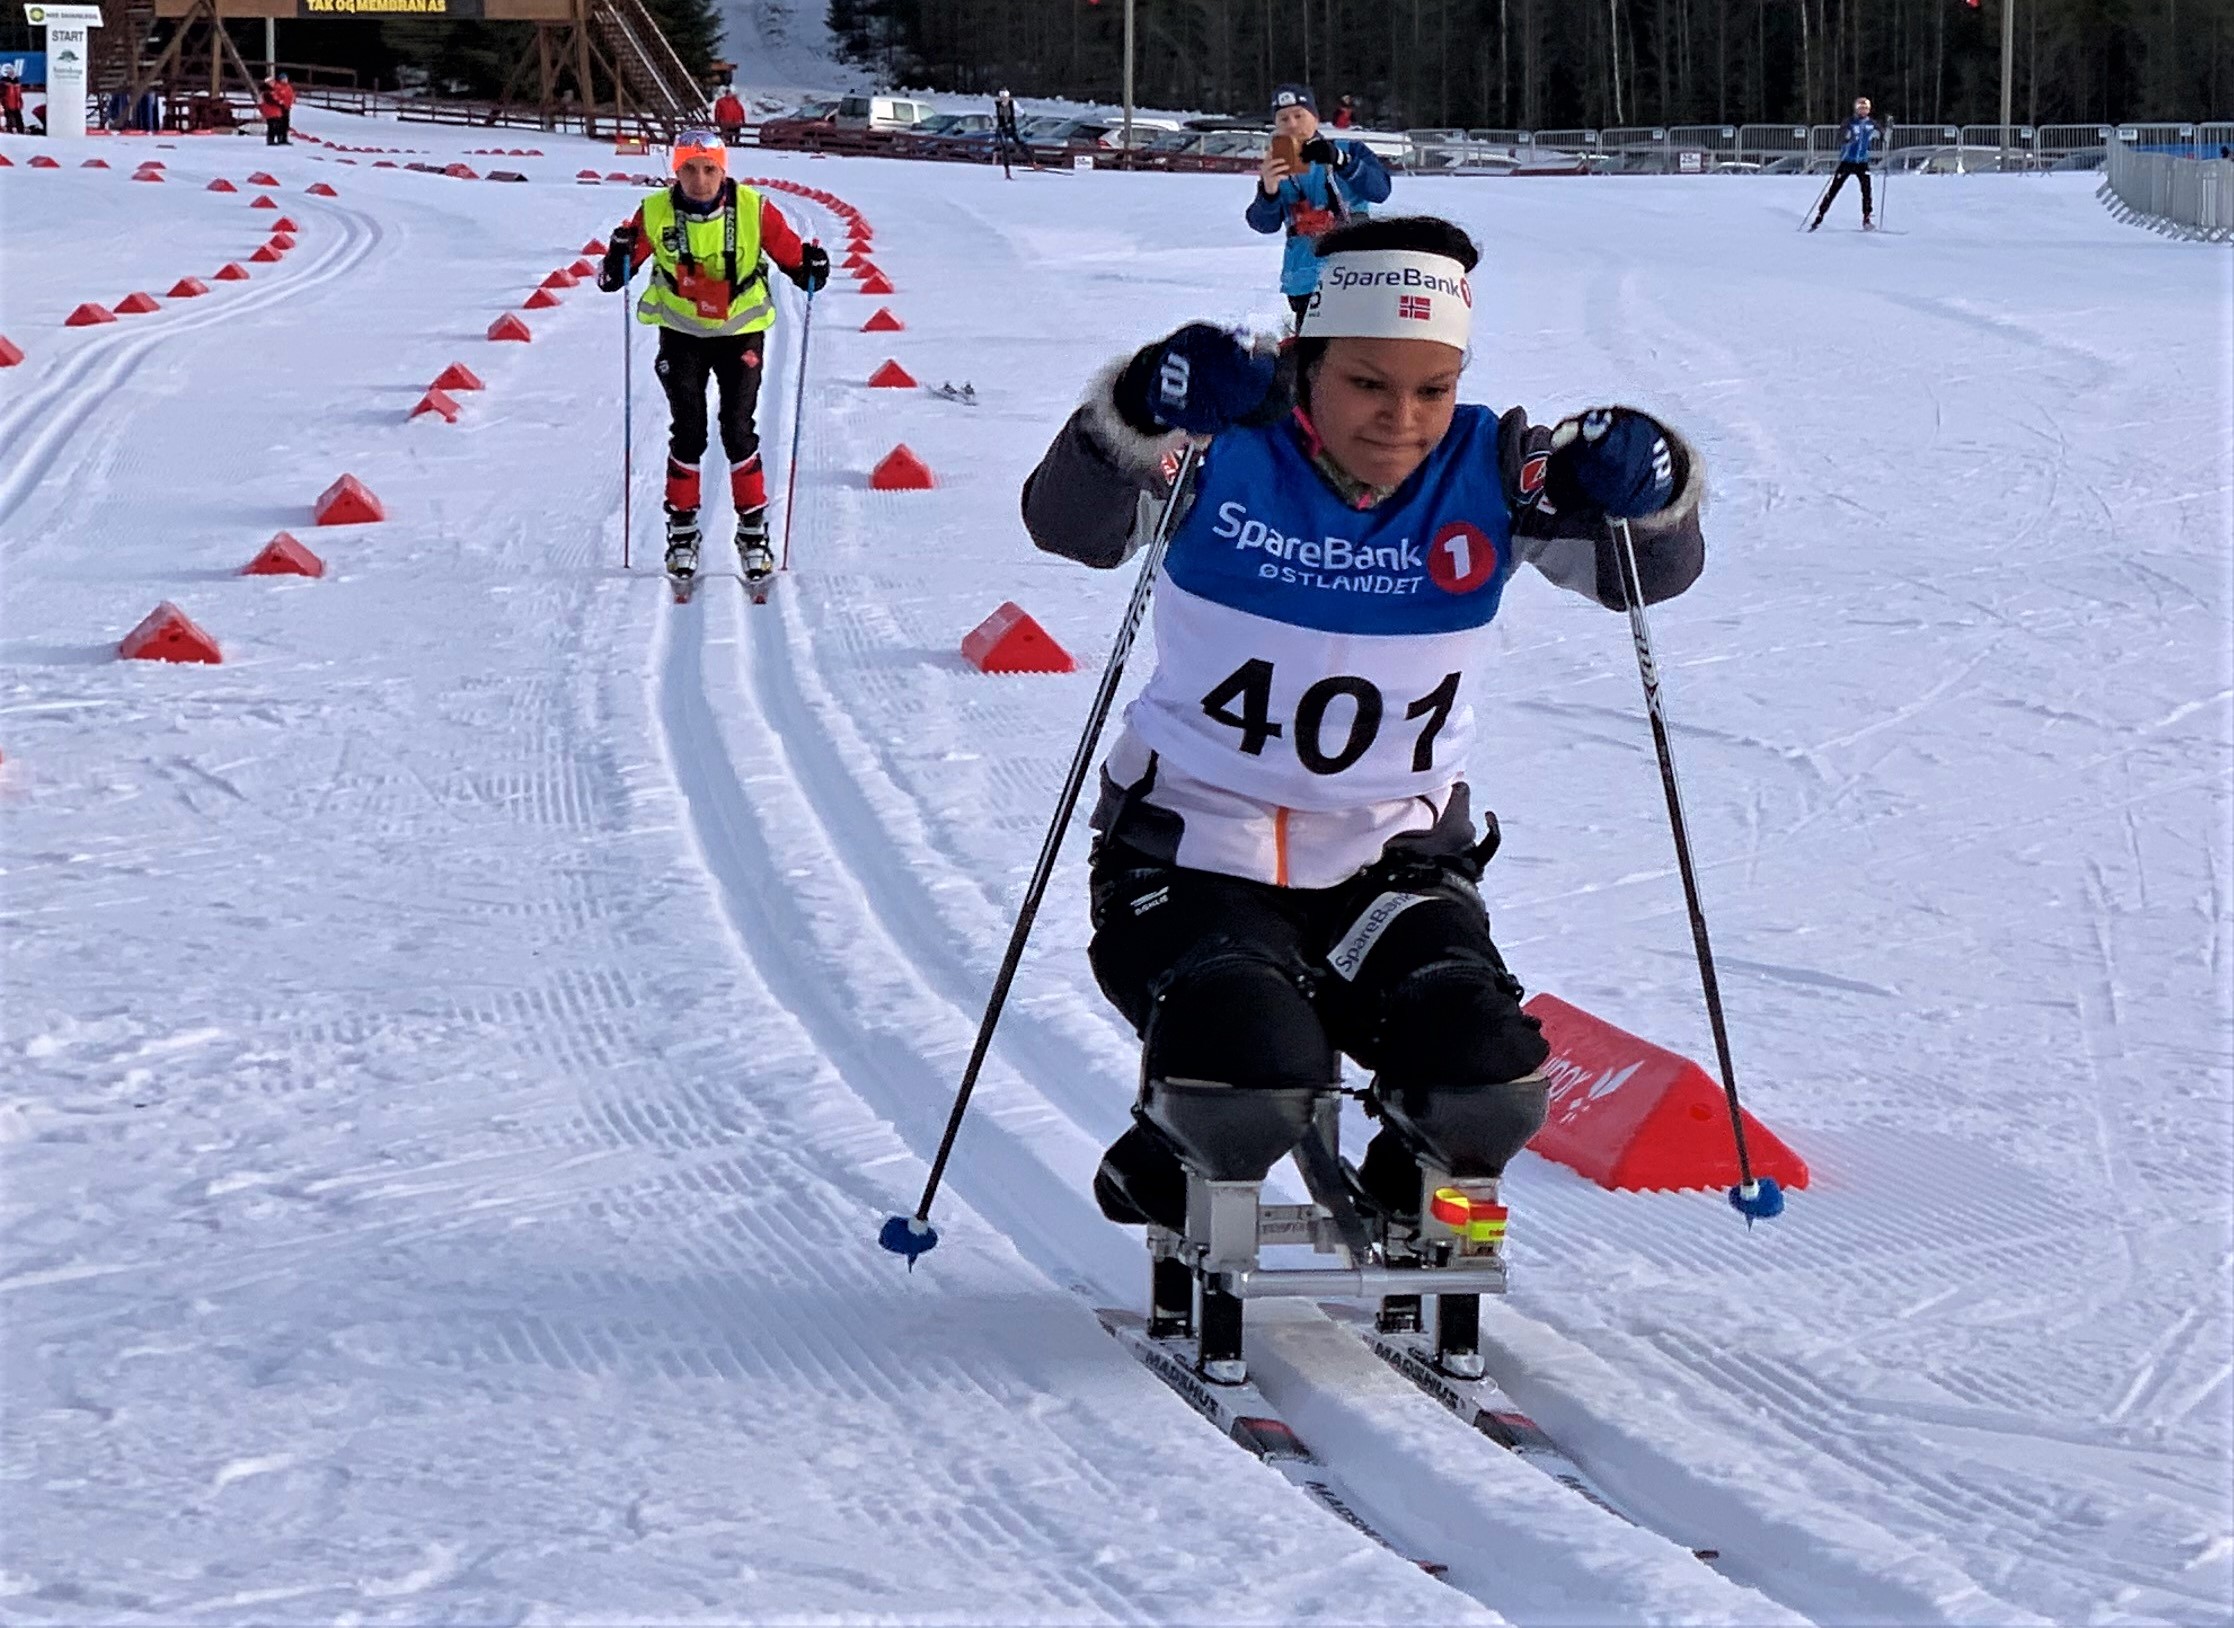 Foto: Anne Ragnhild Kroken, Norges skiforbund